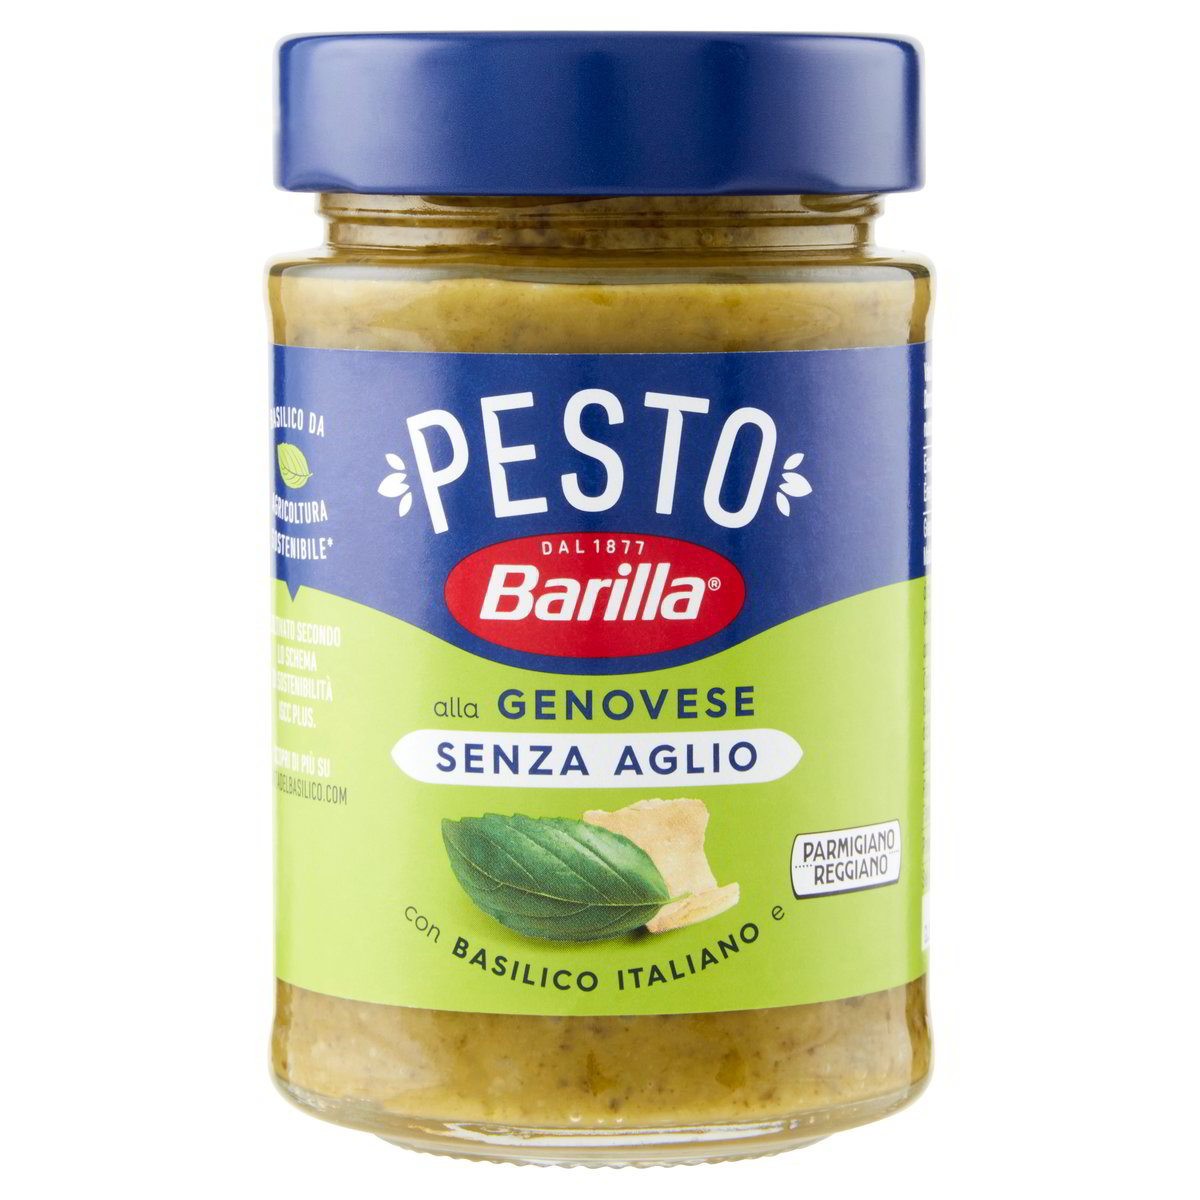 Pesto alla Genovese senz'aglio